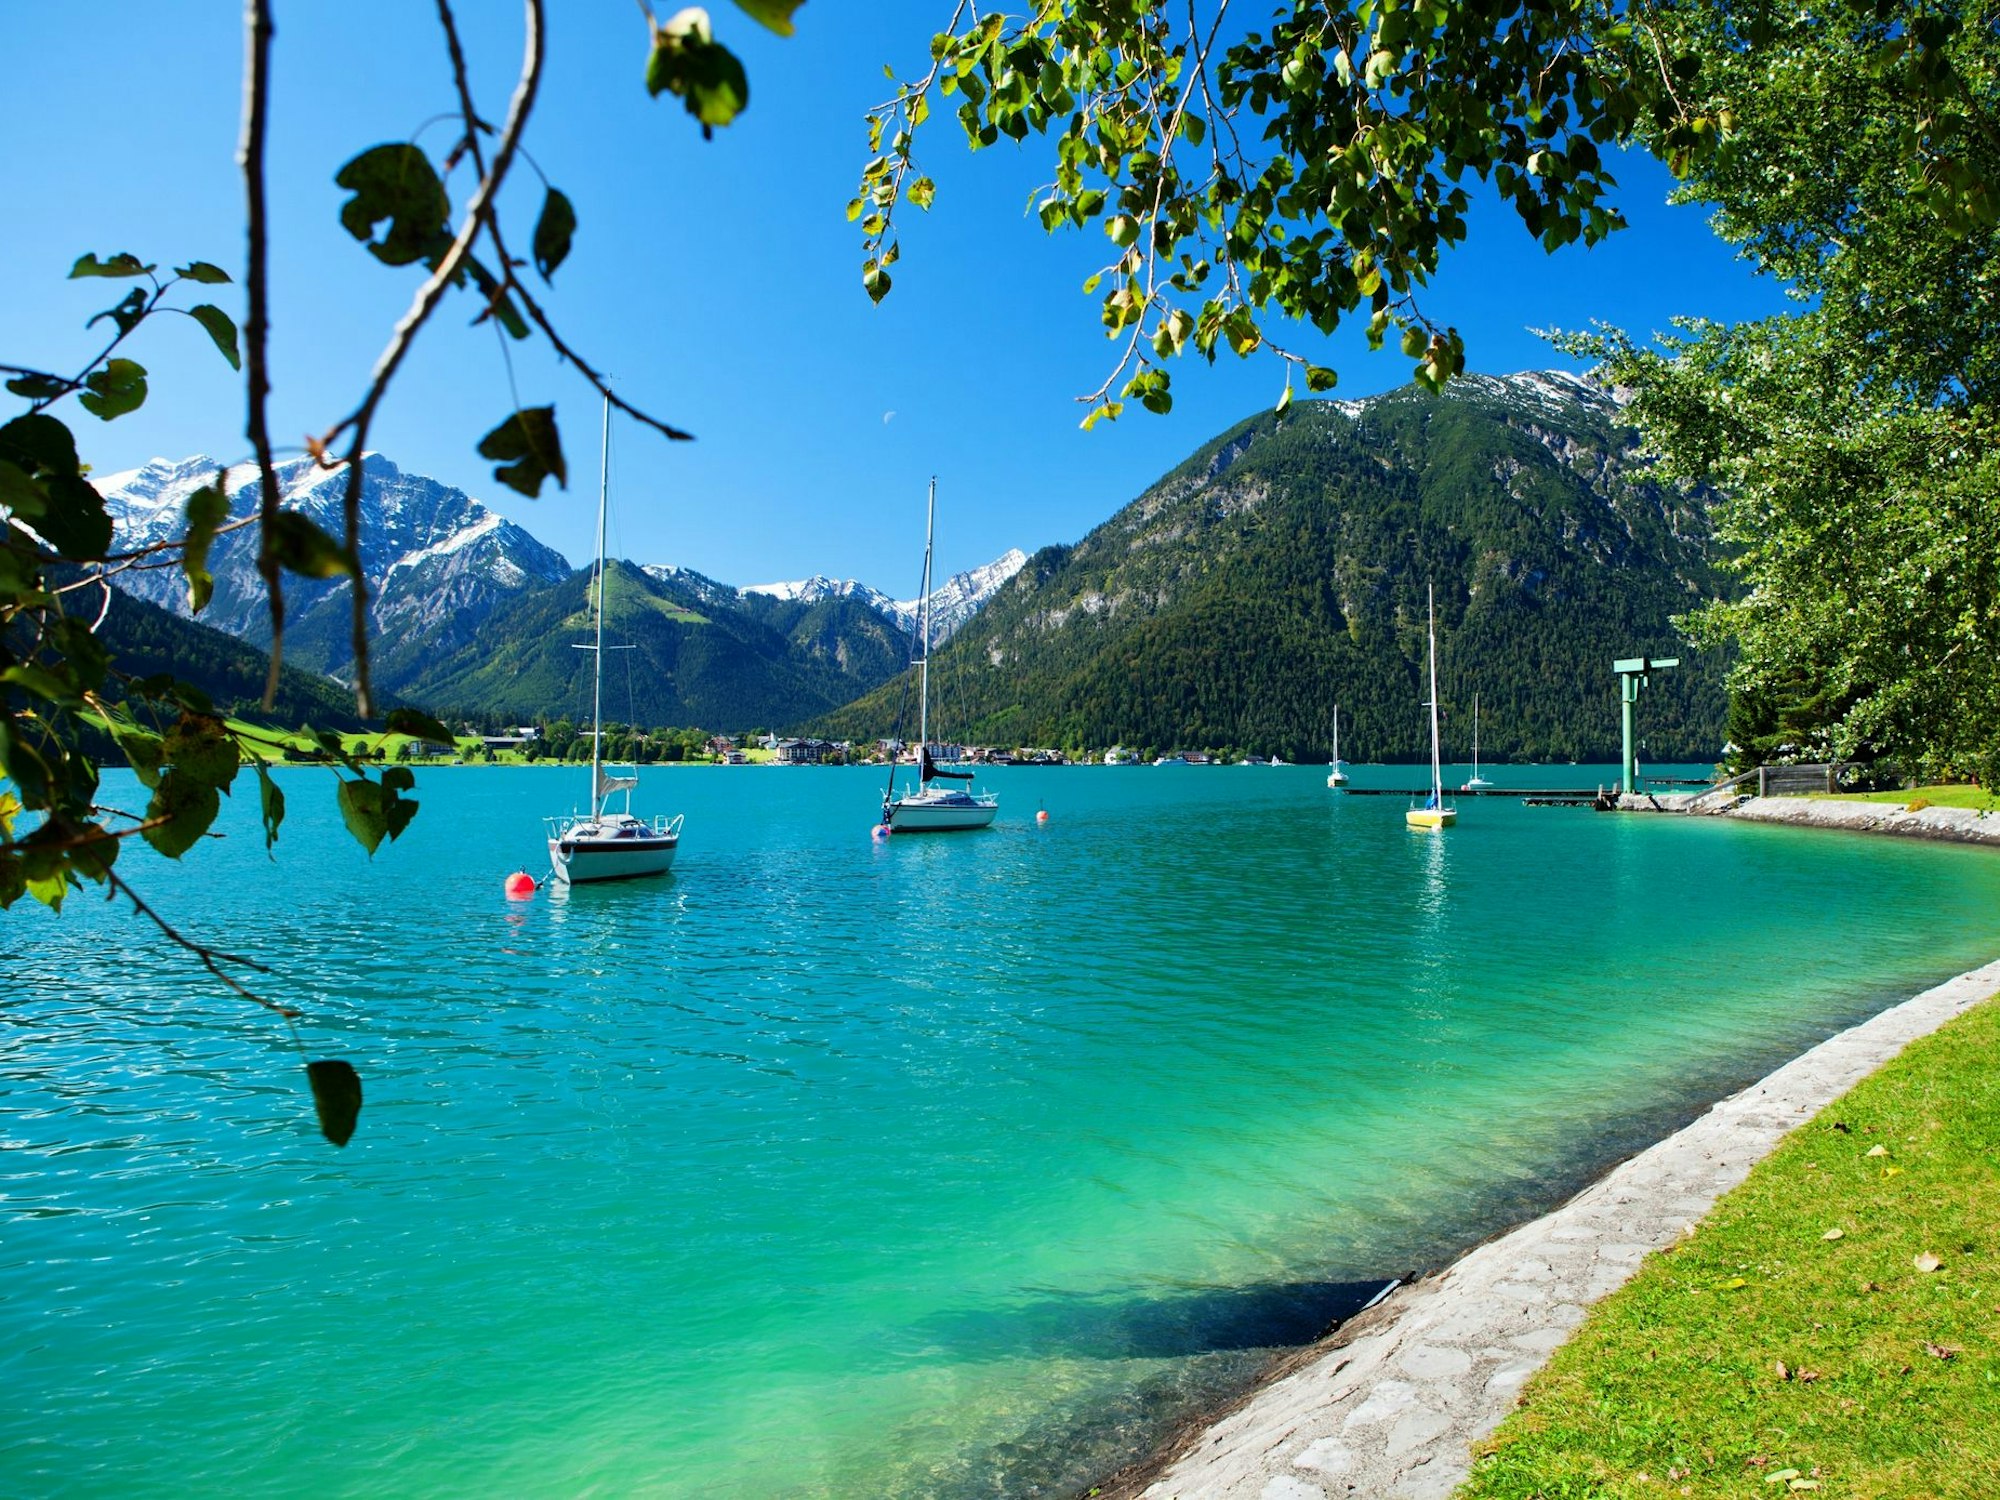 Einer der bekanntesten und schönsten Seen in Österreich ist der Achensee.